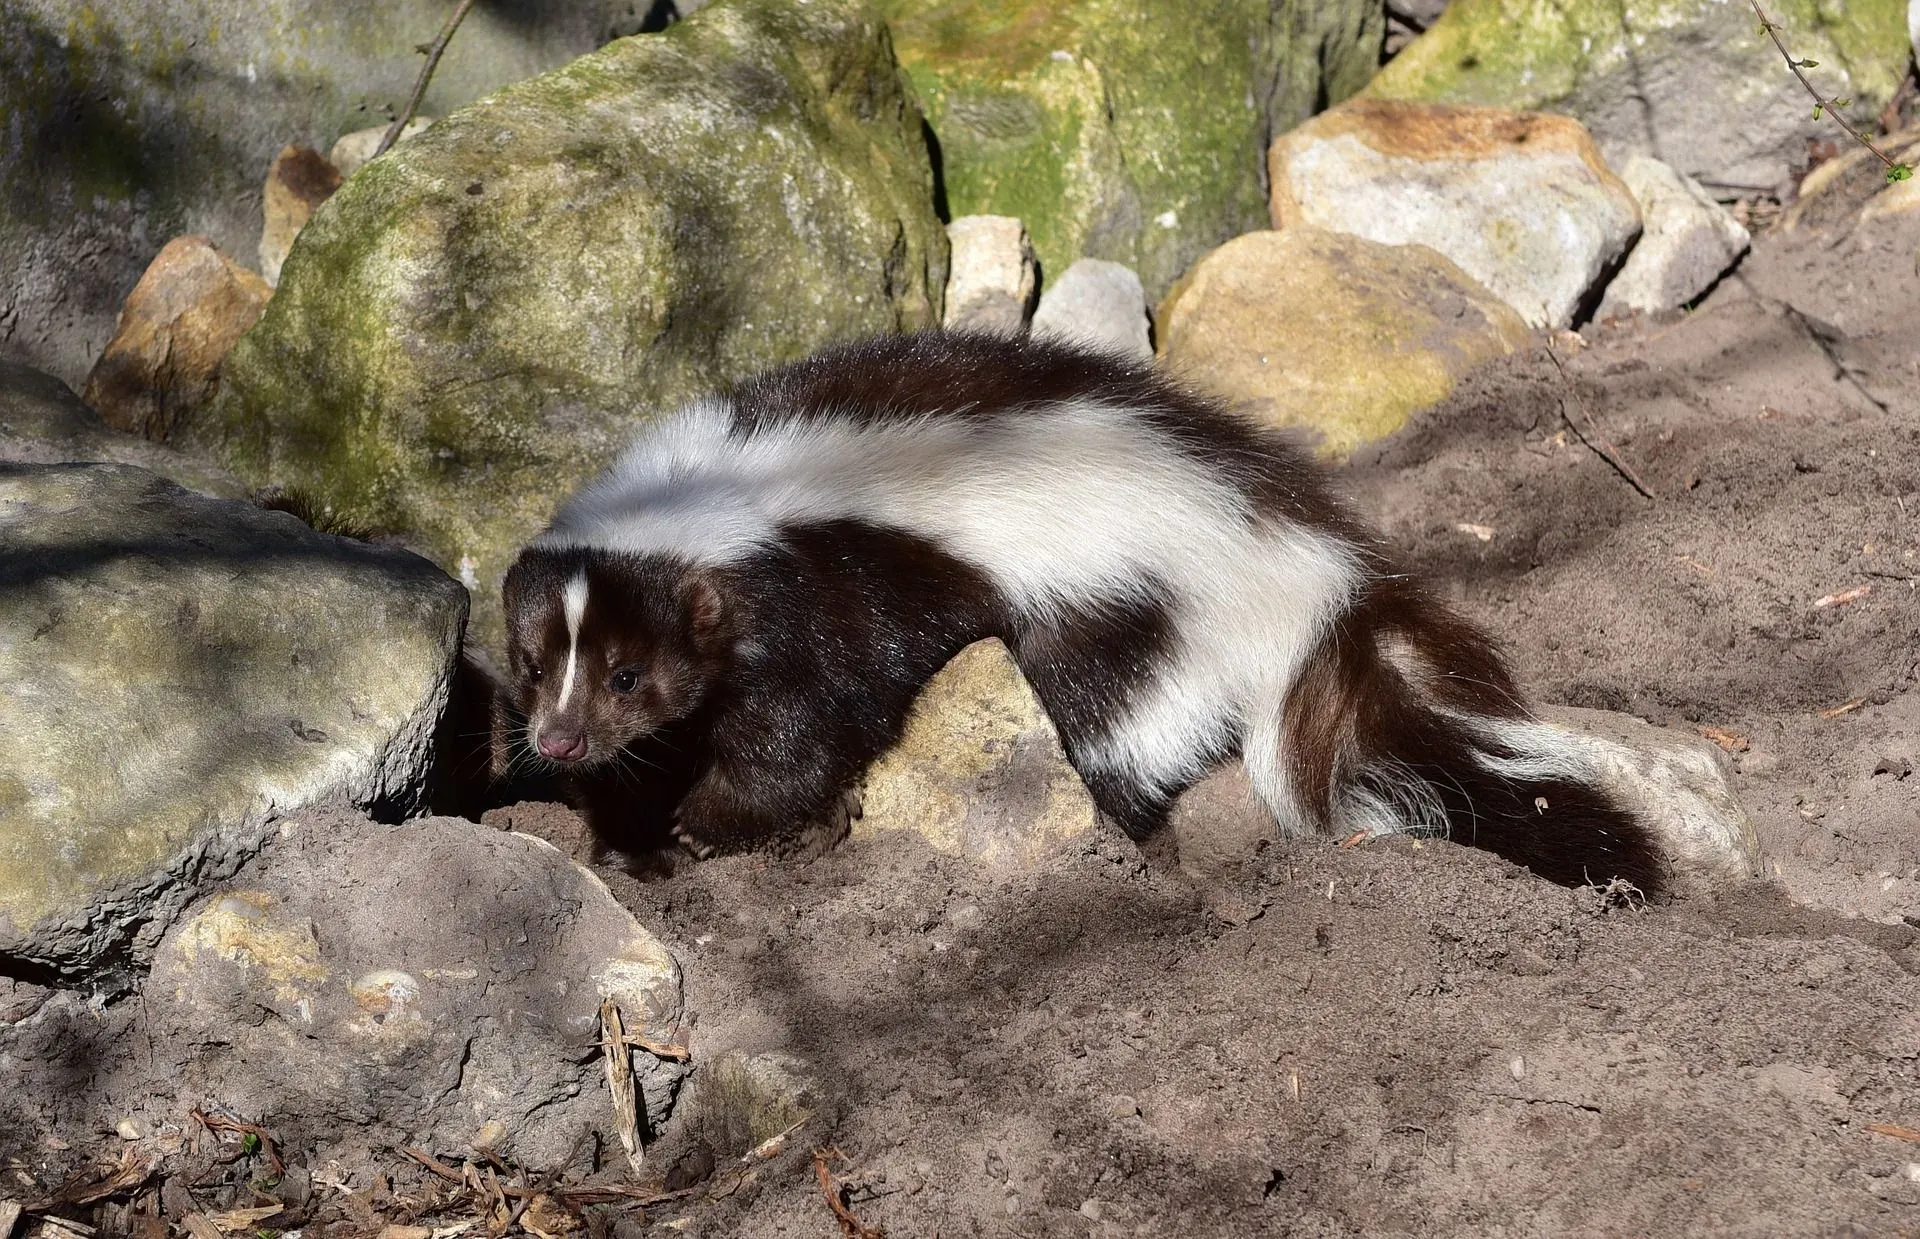 Do skunks hibernate? Where do they hide in winter?